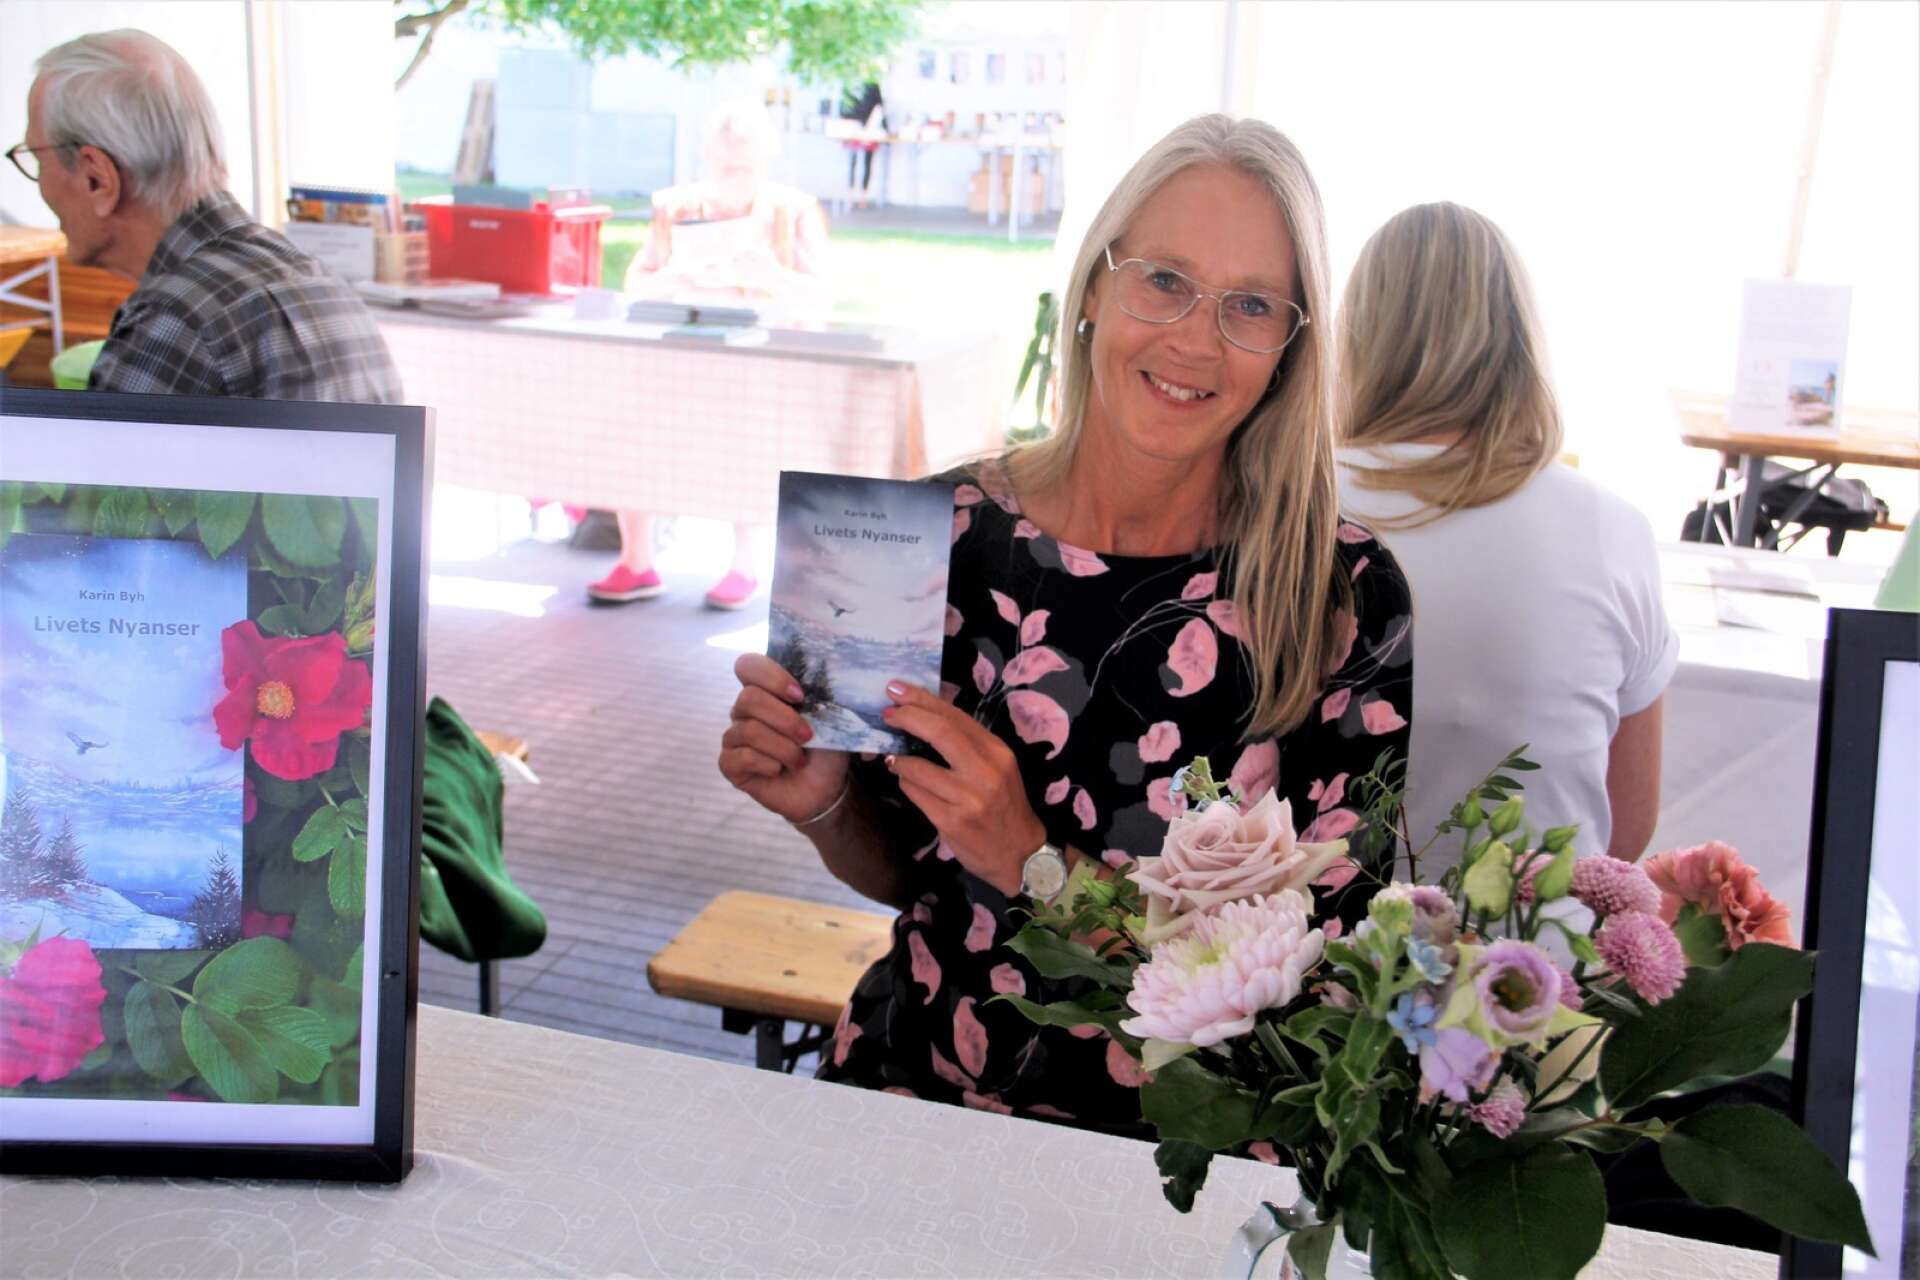 Karin Byh från Åmål har nyligen debuterat med diktboken ”Livets nyanser”. Boken är illustrerad med utvalda akvarellmålningar av Lynn Hofmann, som även hon är uppväxt i Åmål.